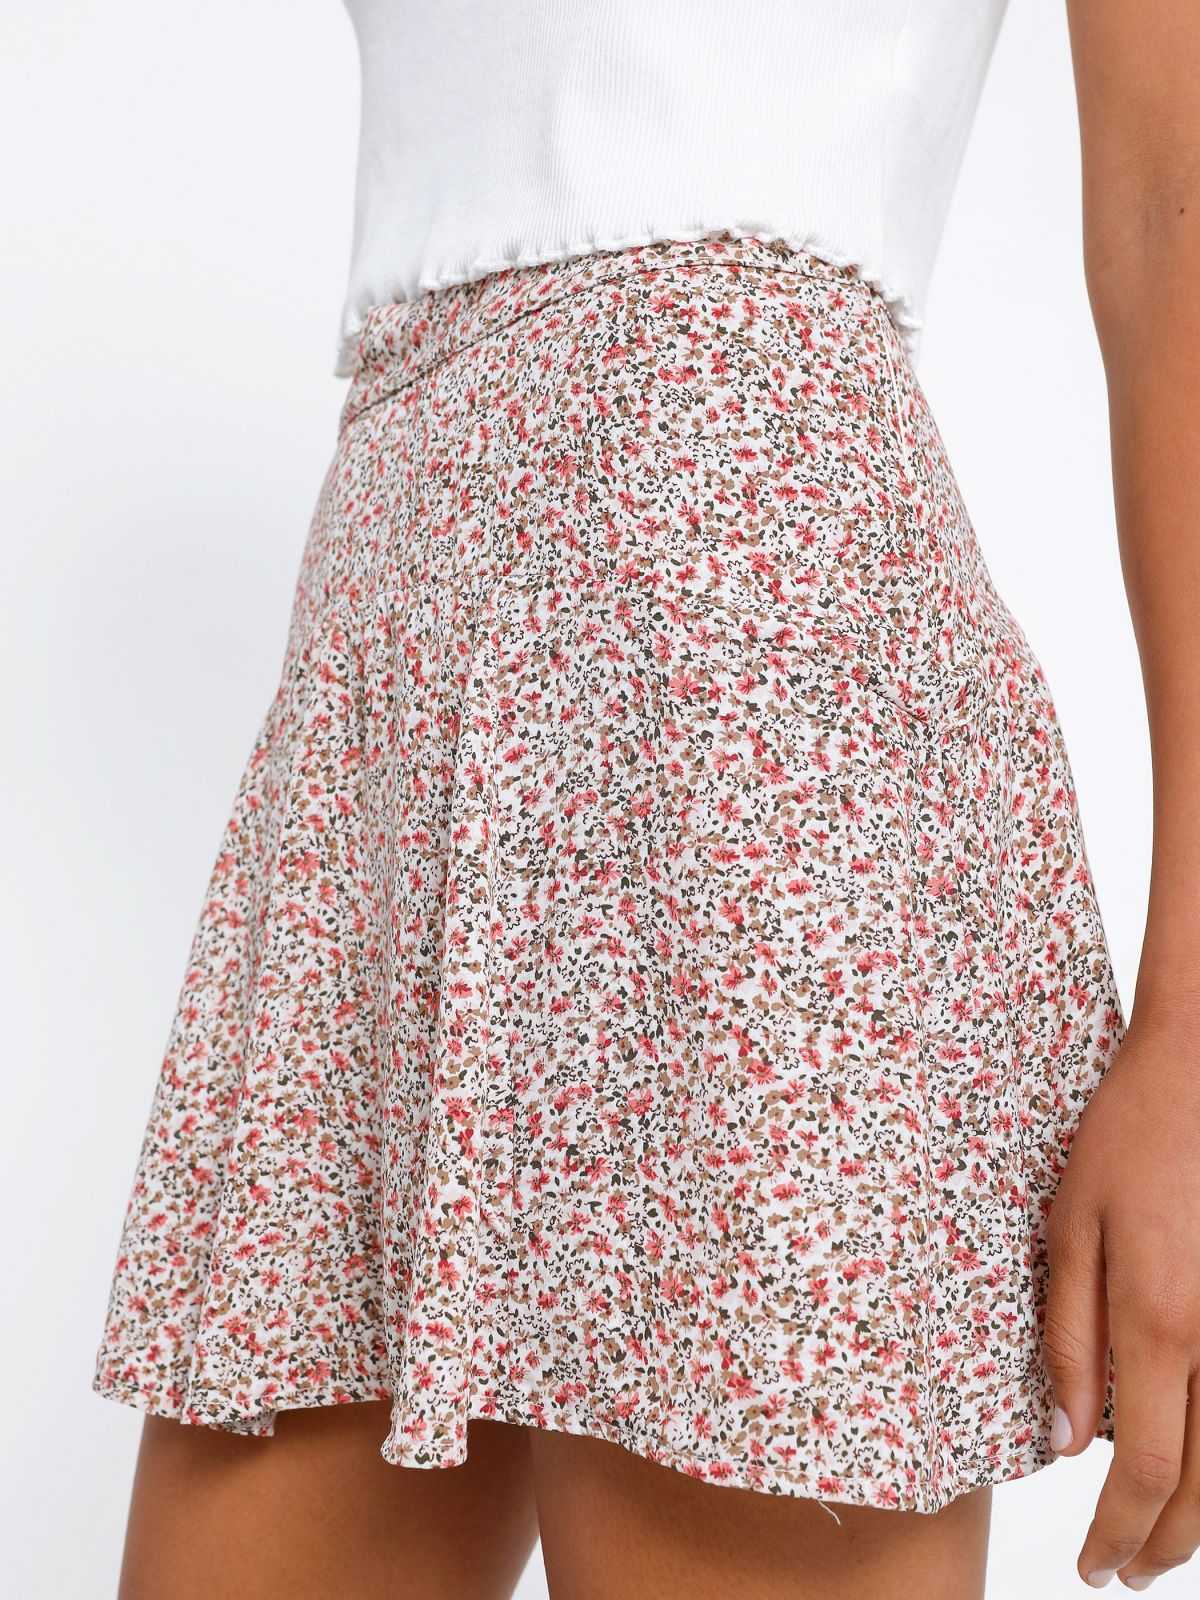  מכנסי חצאית בהדפס פרחים של YANGA